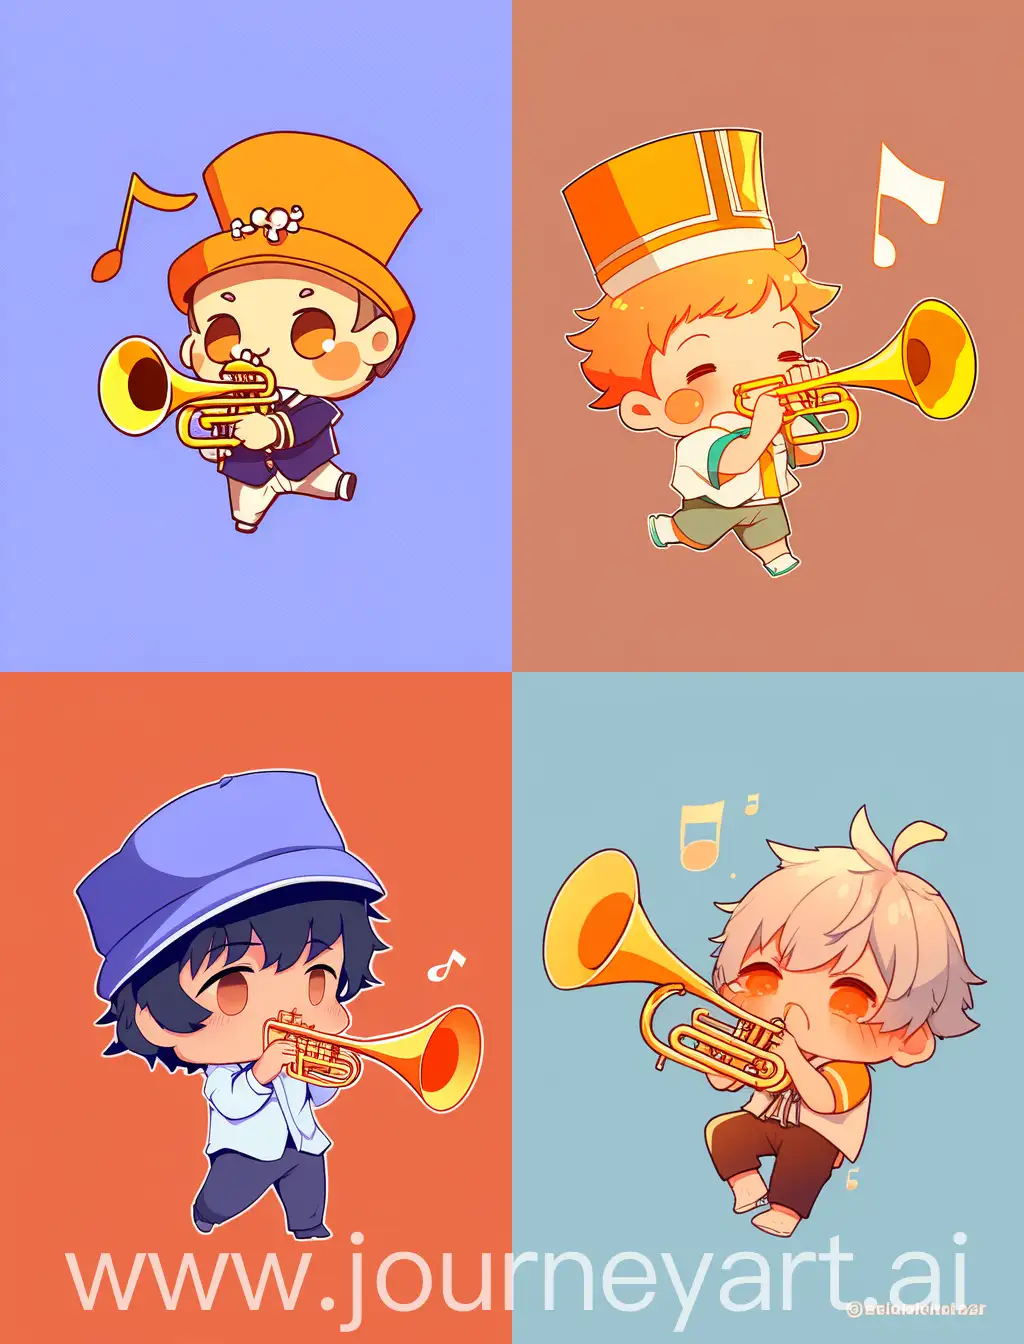 Chibi-Anime-Guy-Playing-Trumpet-on-Vibrant-Orange-Background